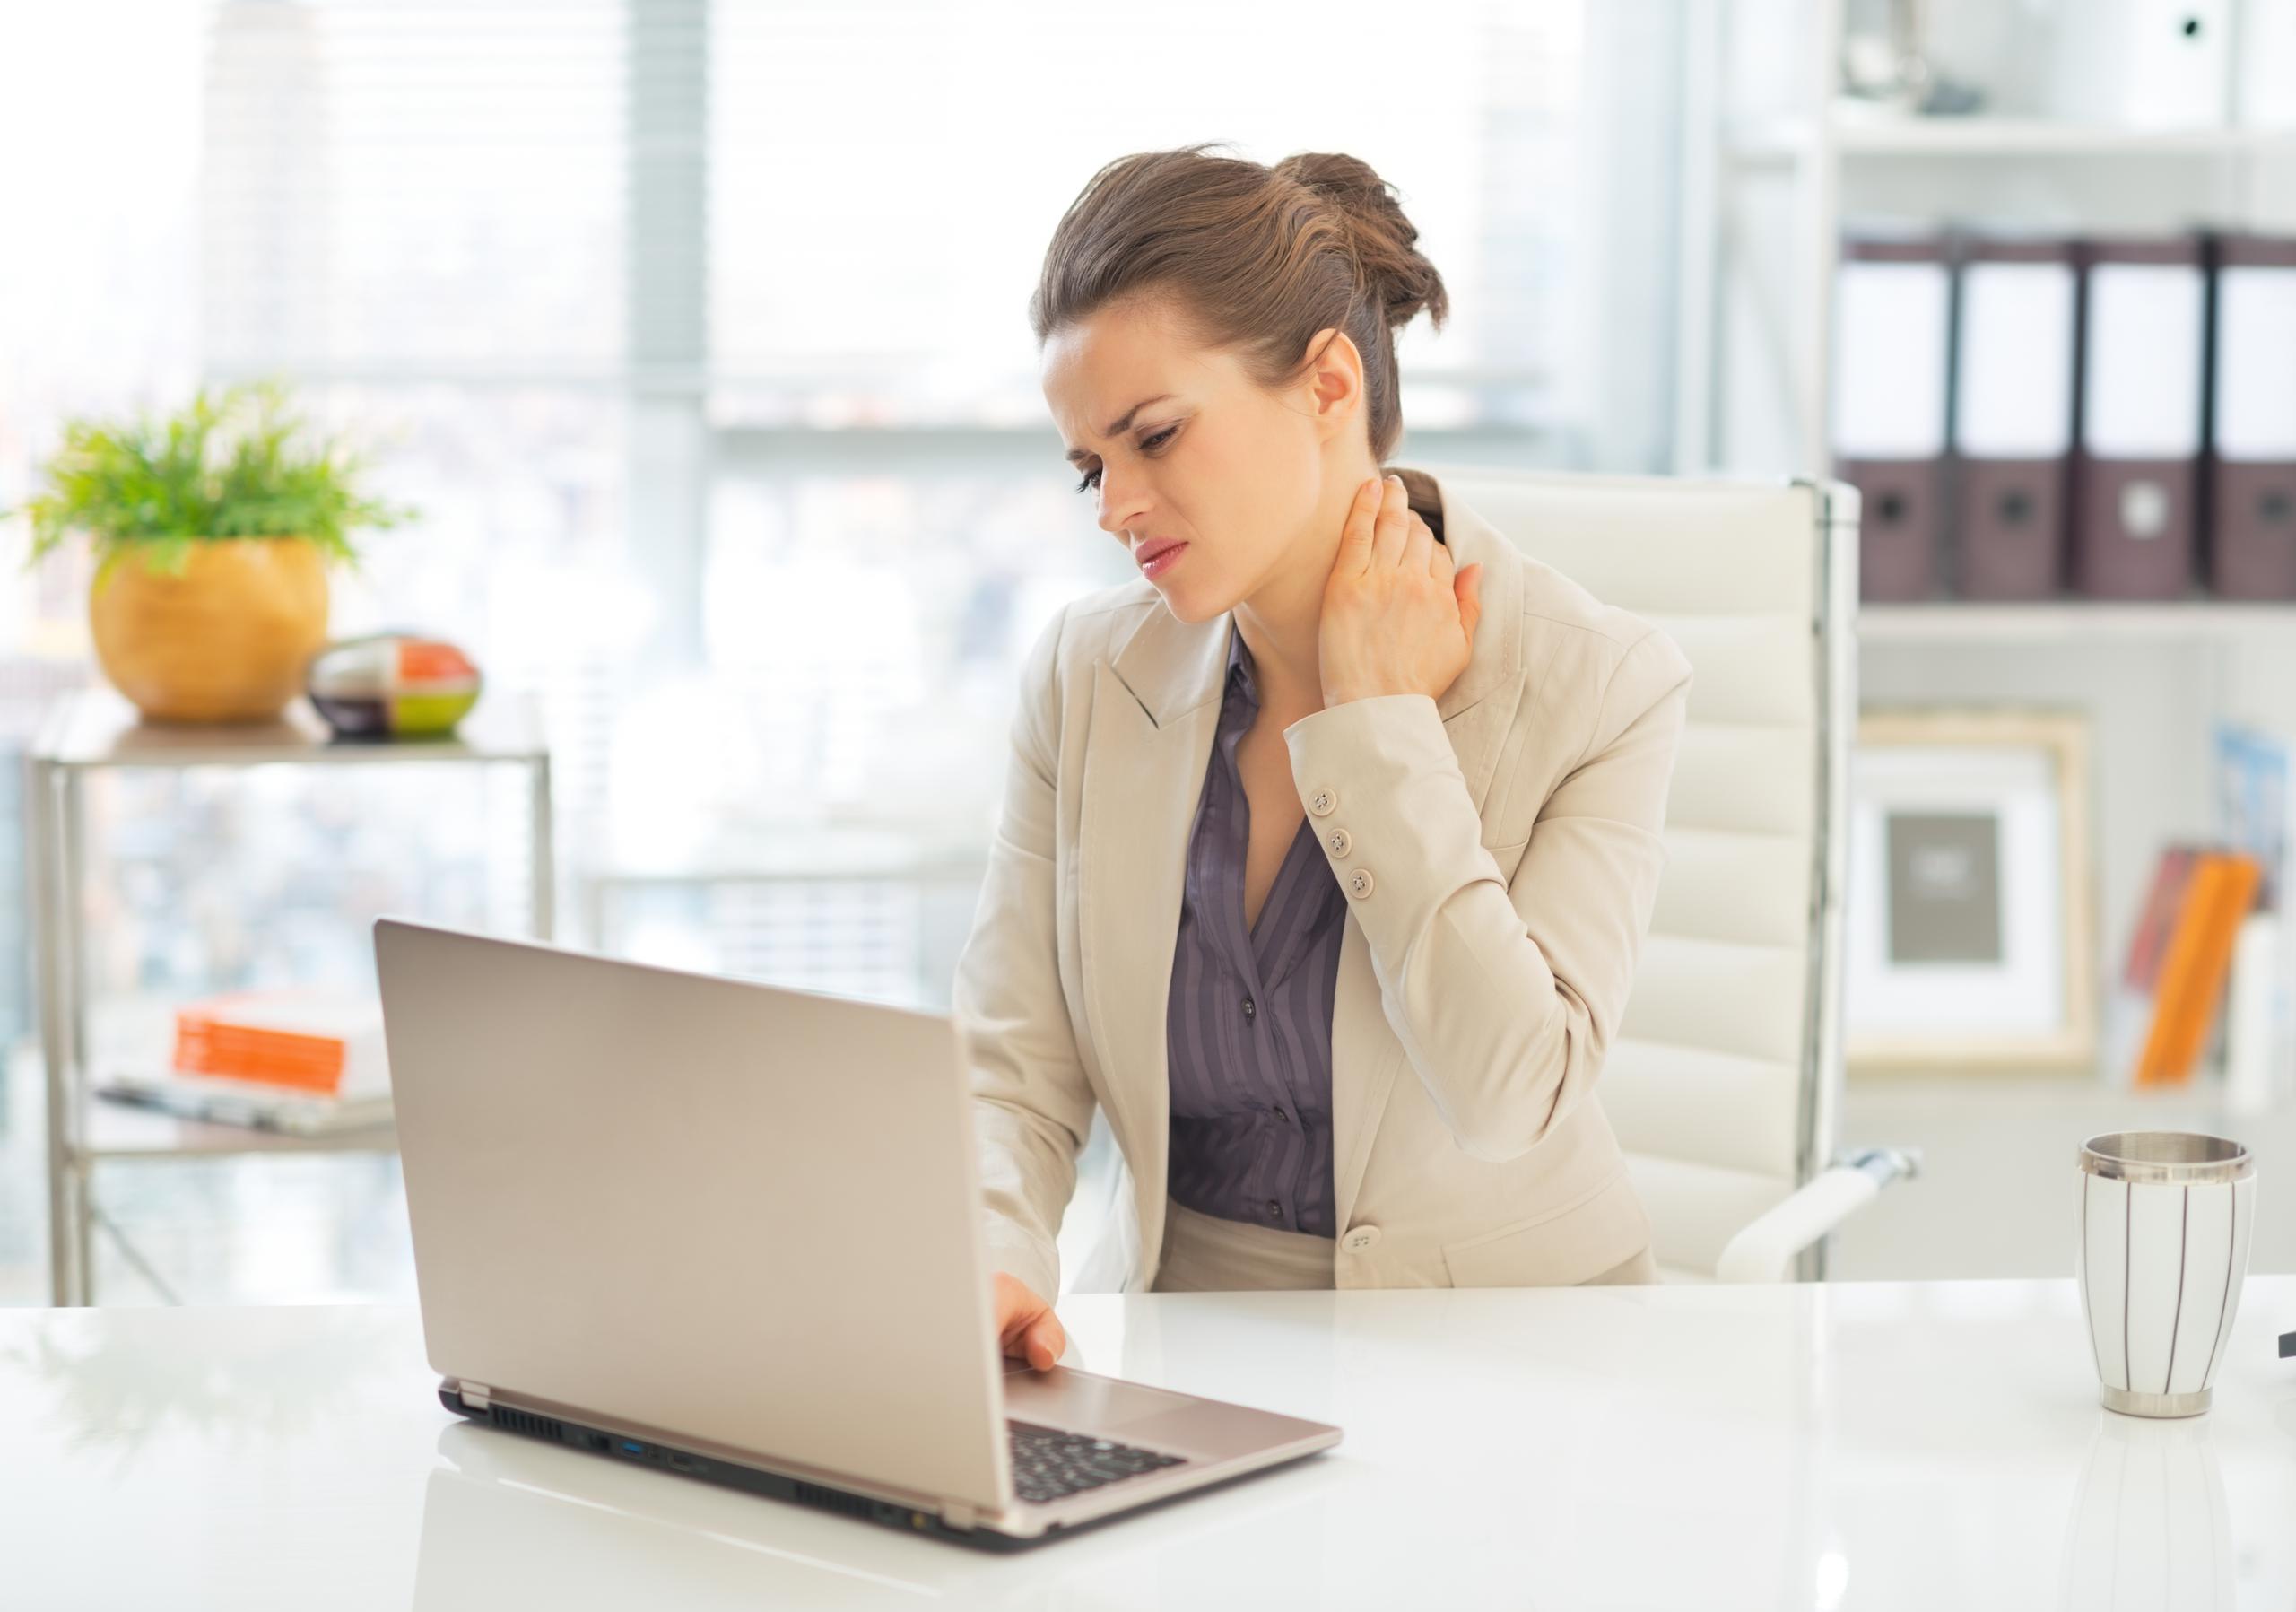 El problema de mala postura no solo se ve frente a un computador de escritorio, sino también con los portátiles e, incluso, con celulares y tabletas. (Shutterstock)